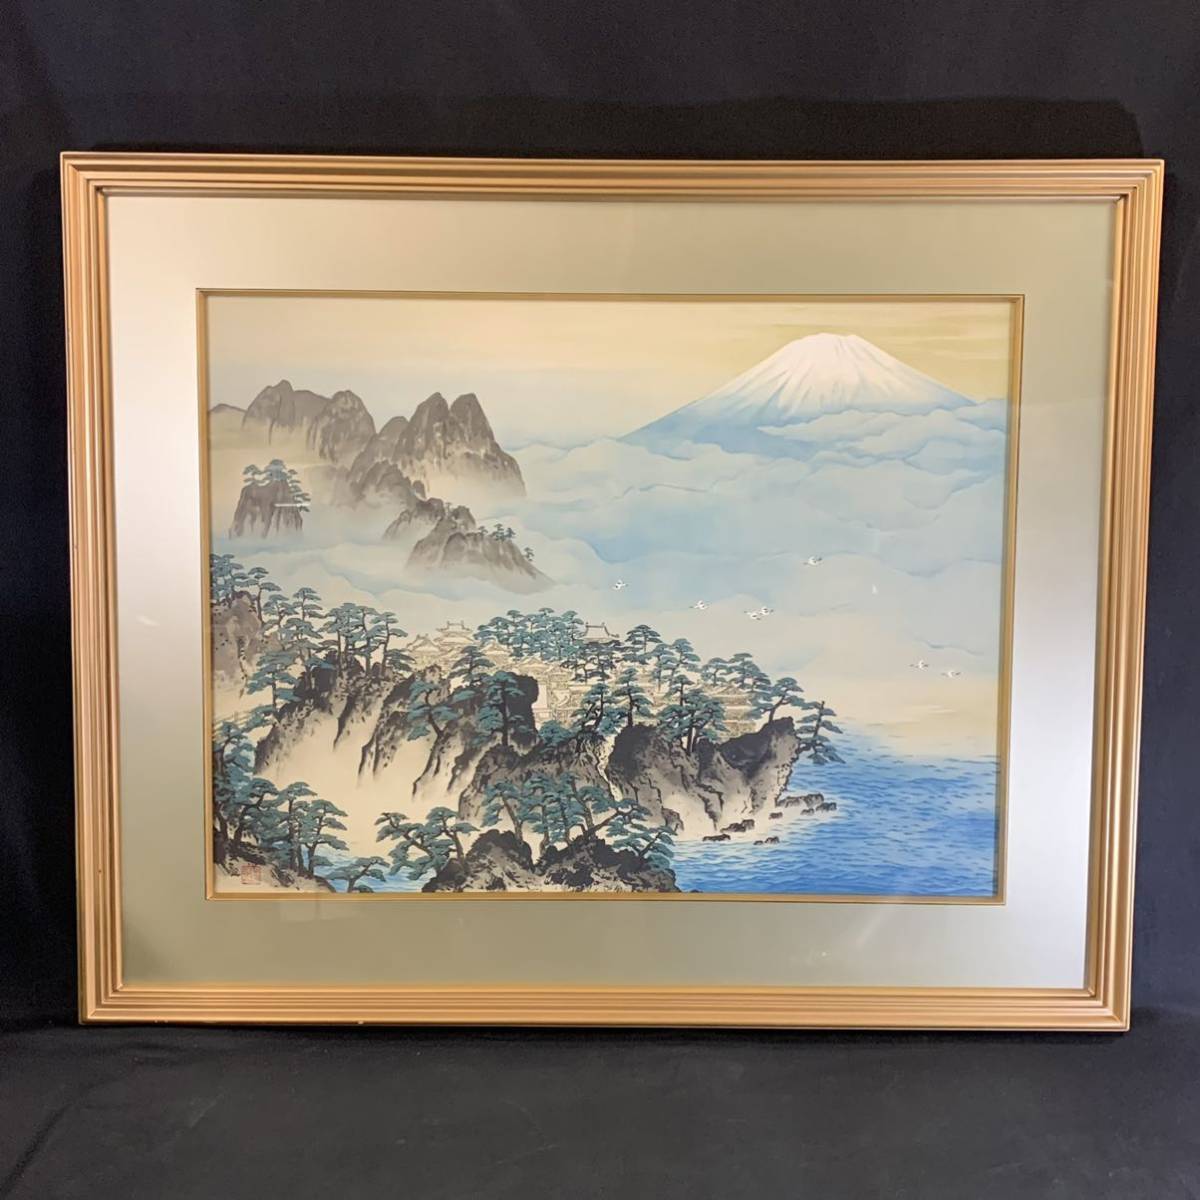 Sawa 66) Yokoyama Taikan Mt. Hourai Litografía pintura grande Tamaño del marco aprox. 70 x 86 cm Autenticidad garantizada, obra de arte, imprimir, litografía, litografía